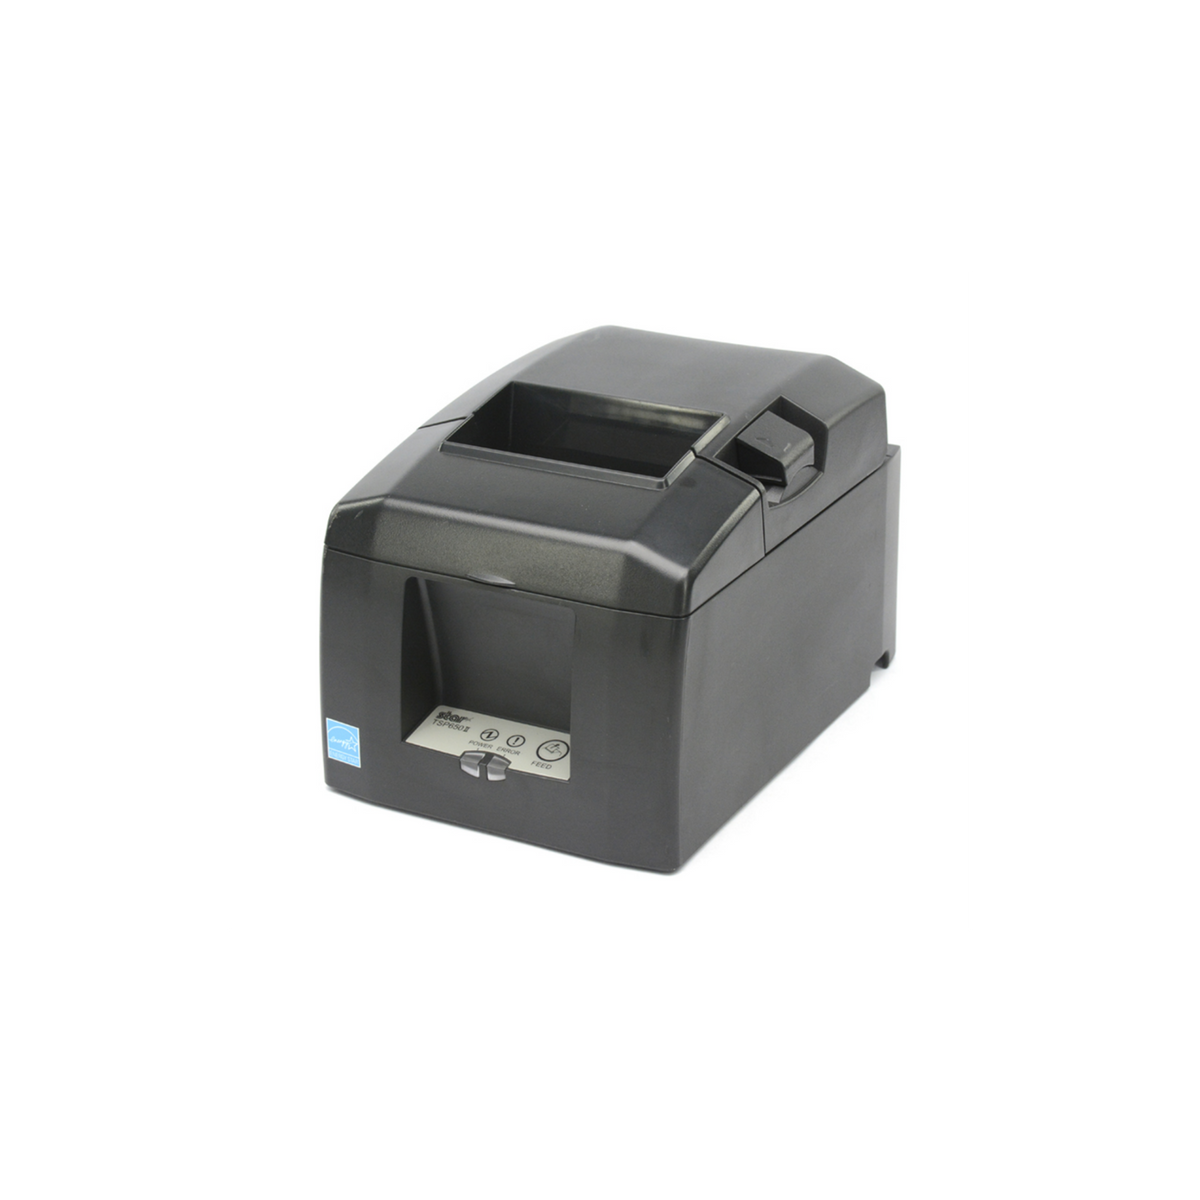 Star Micronics Thermal Receipt Printer- TSP654II CloudPRNT